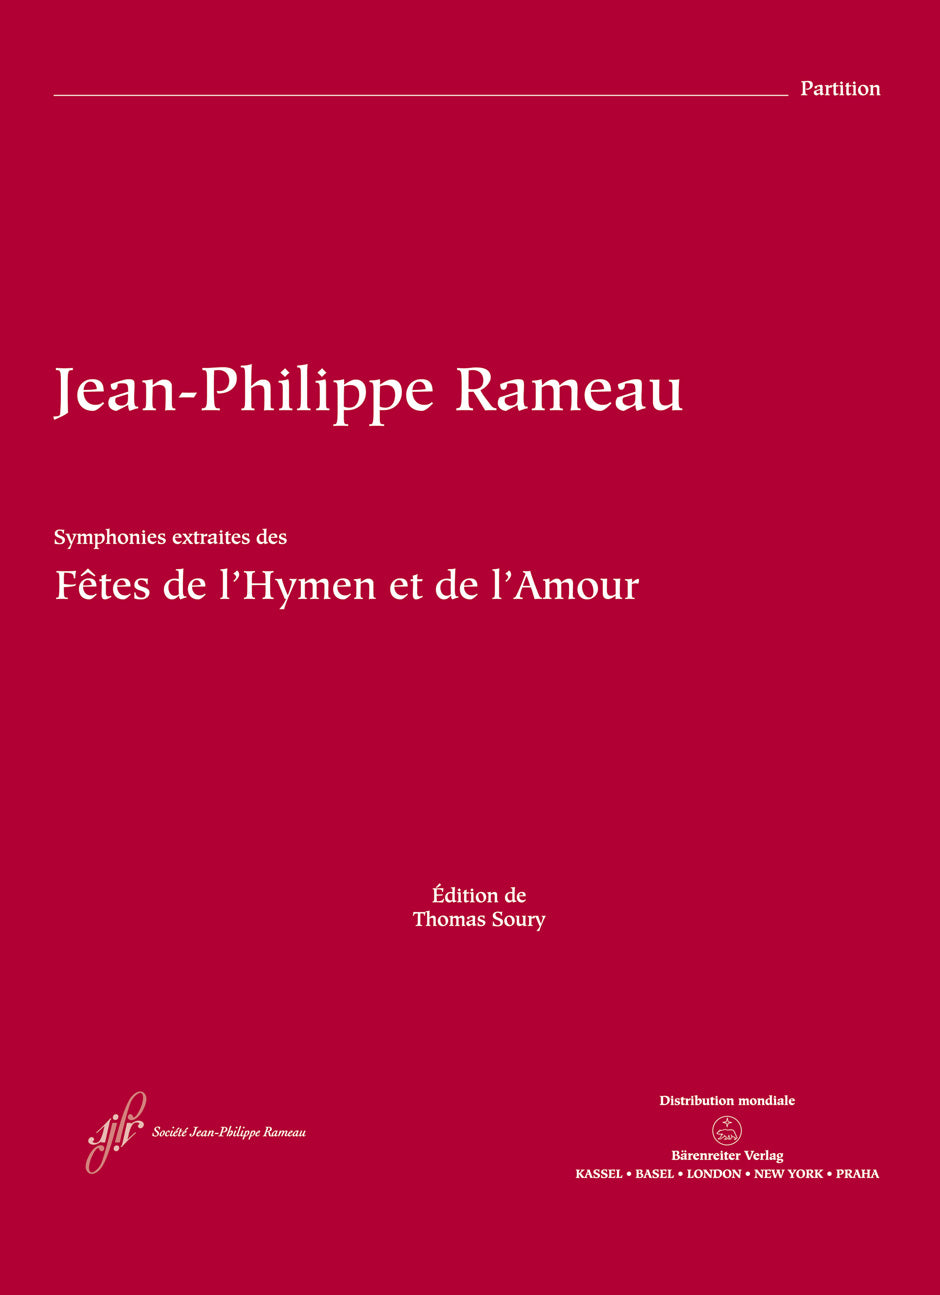 Rameau: Symphonies from Les Fêtes de l'Hymen et de l'Amour, RCT 38